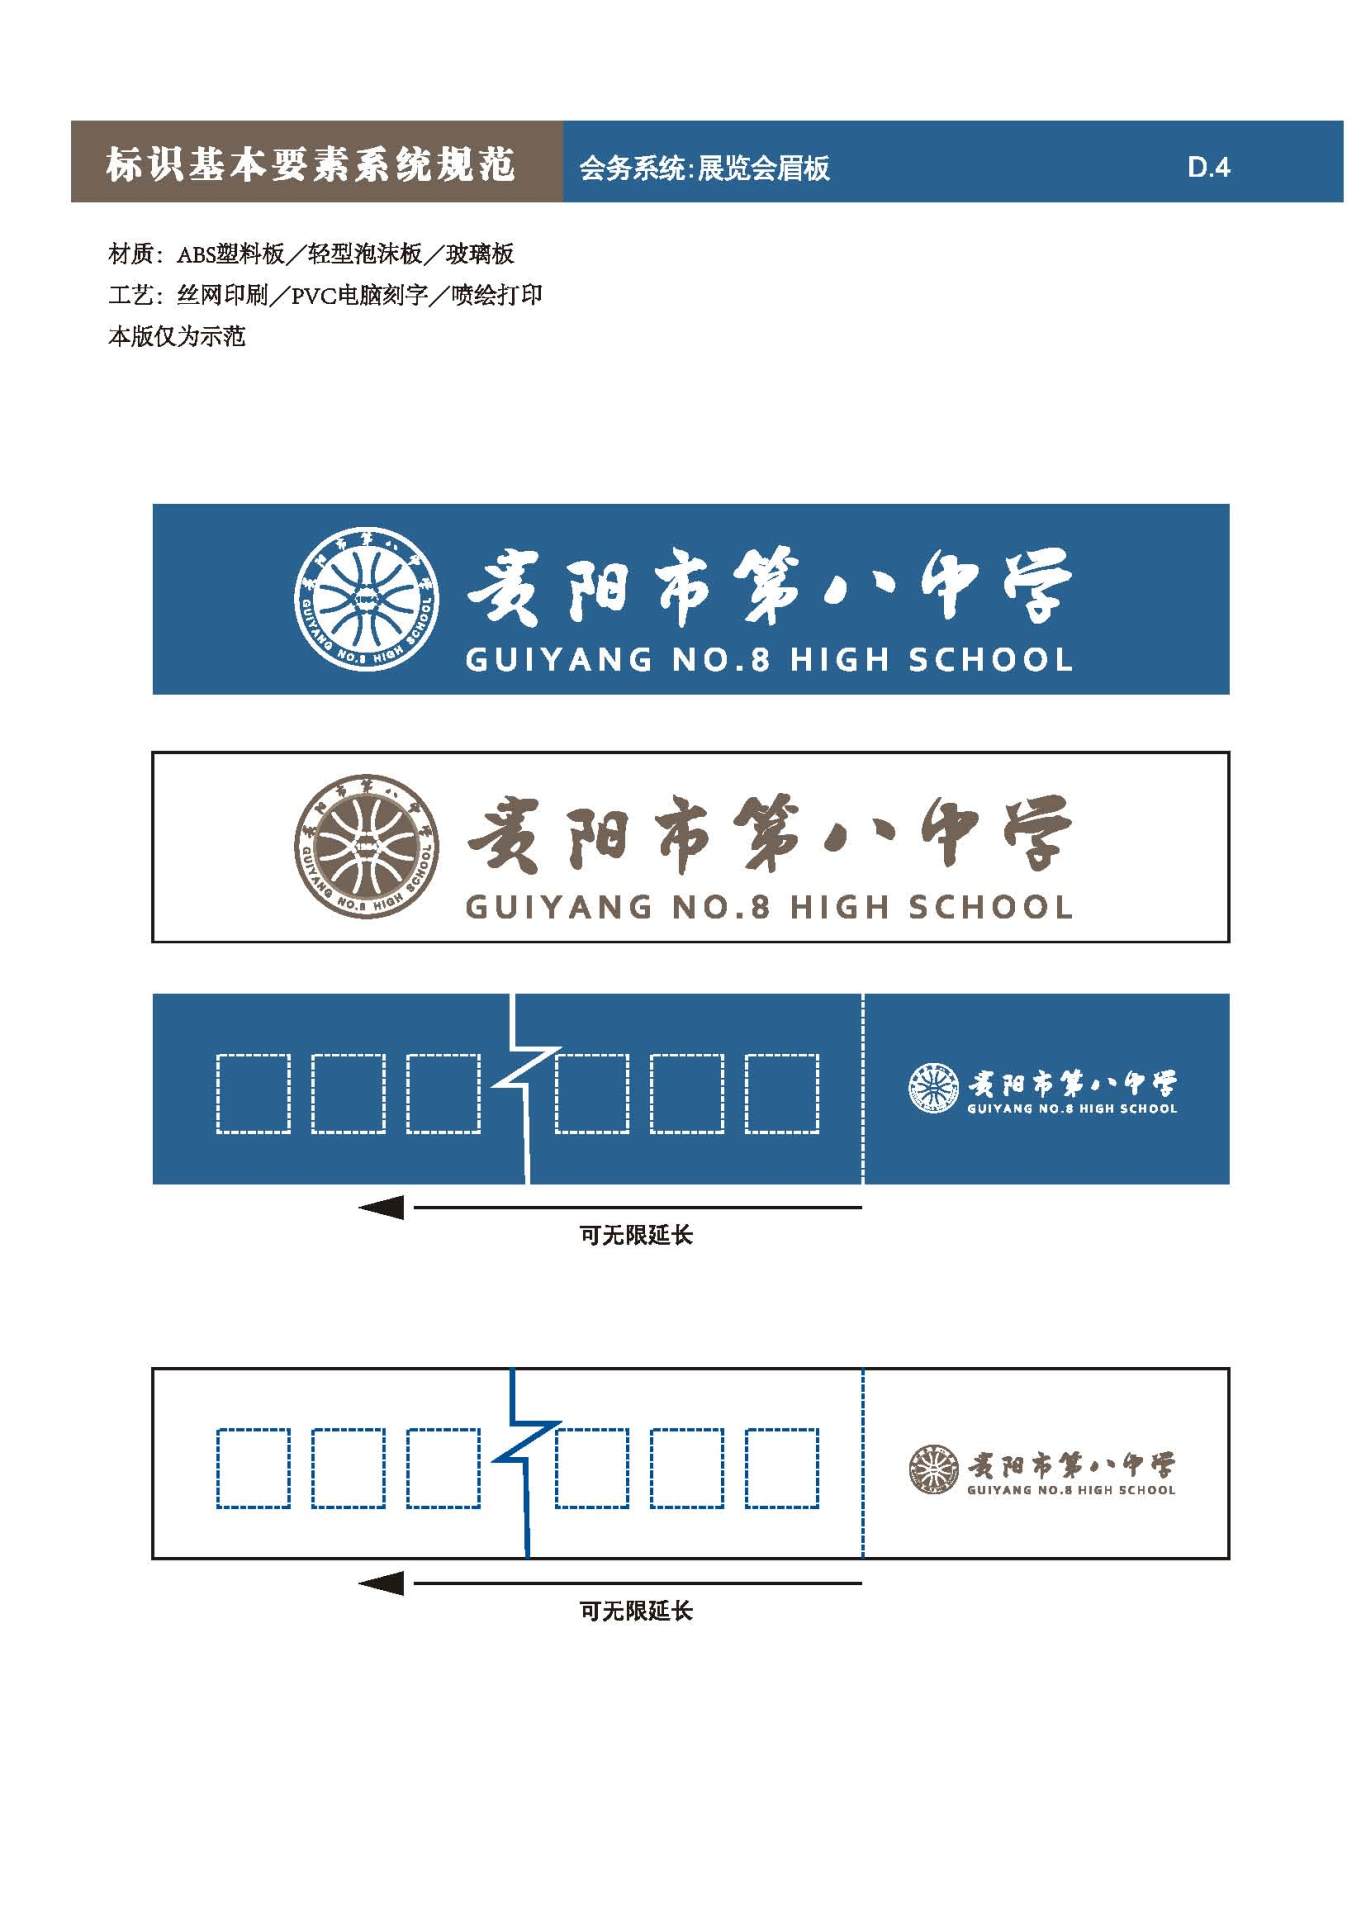 貴陽第八中學Logo、VIS設計圖73